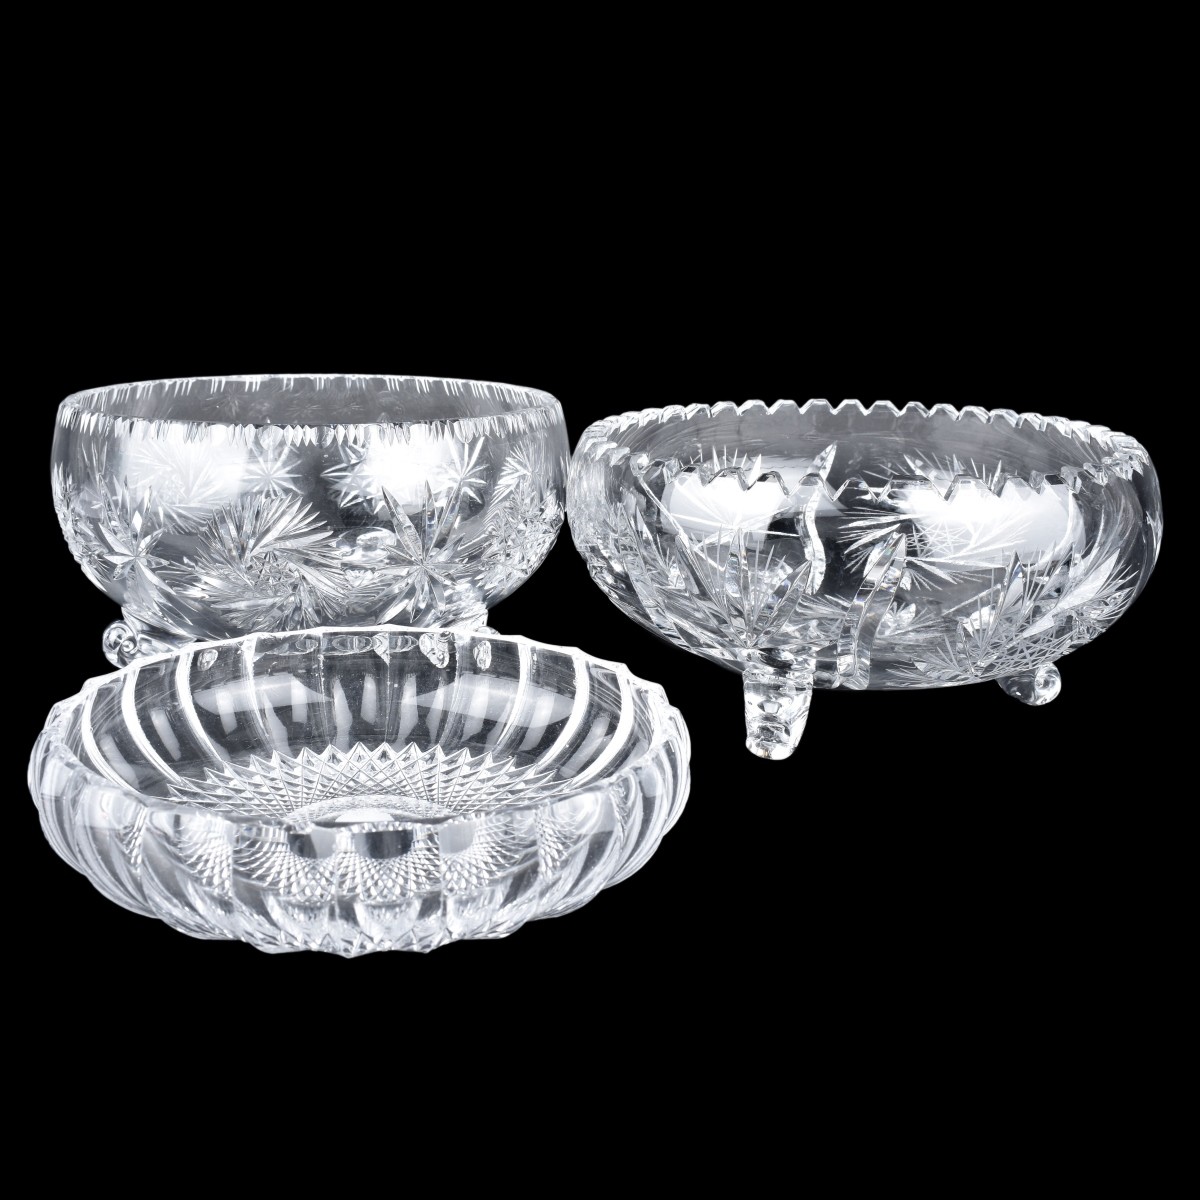 Three Pieces Vintage Cut Crystal Bowls